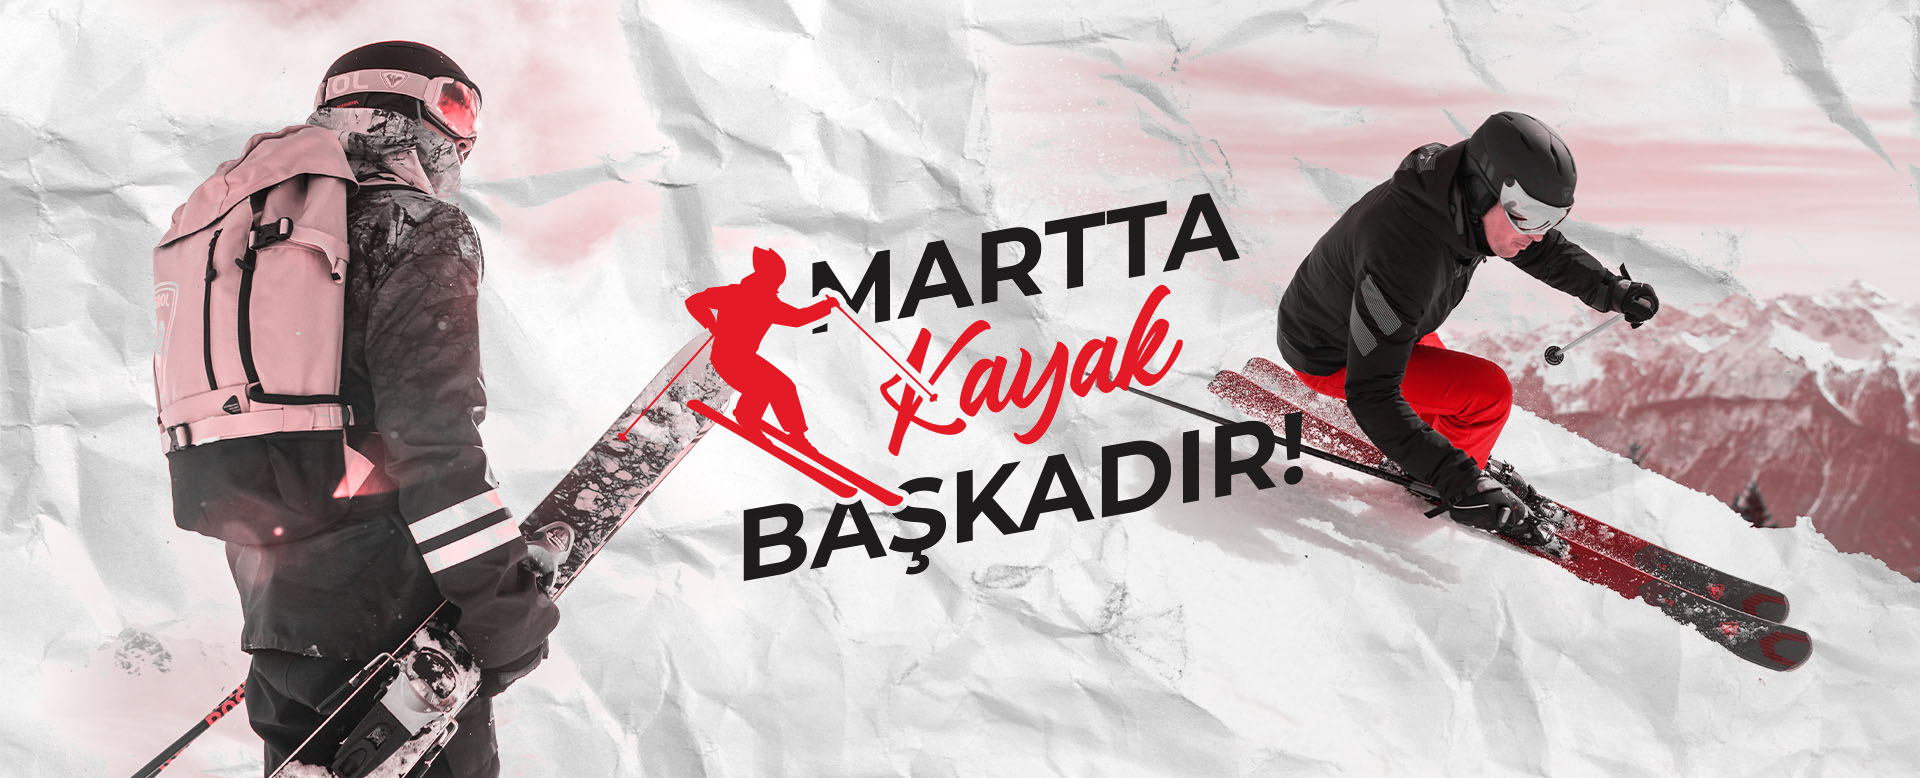 martta-kayak-baskadir-mkb-banner